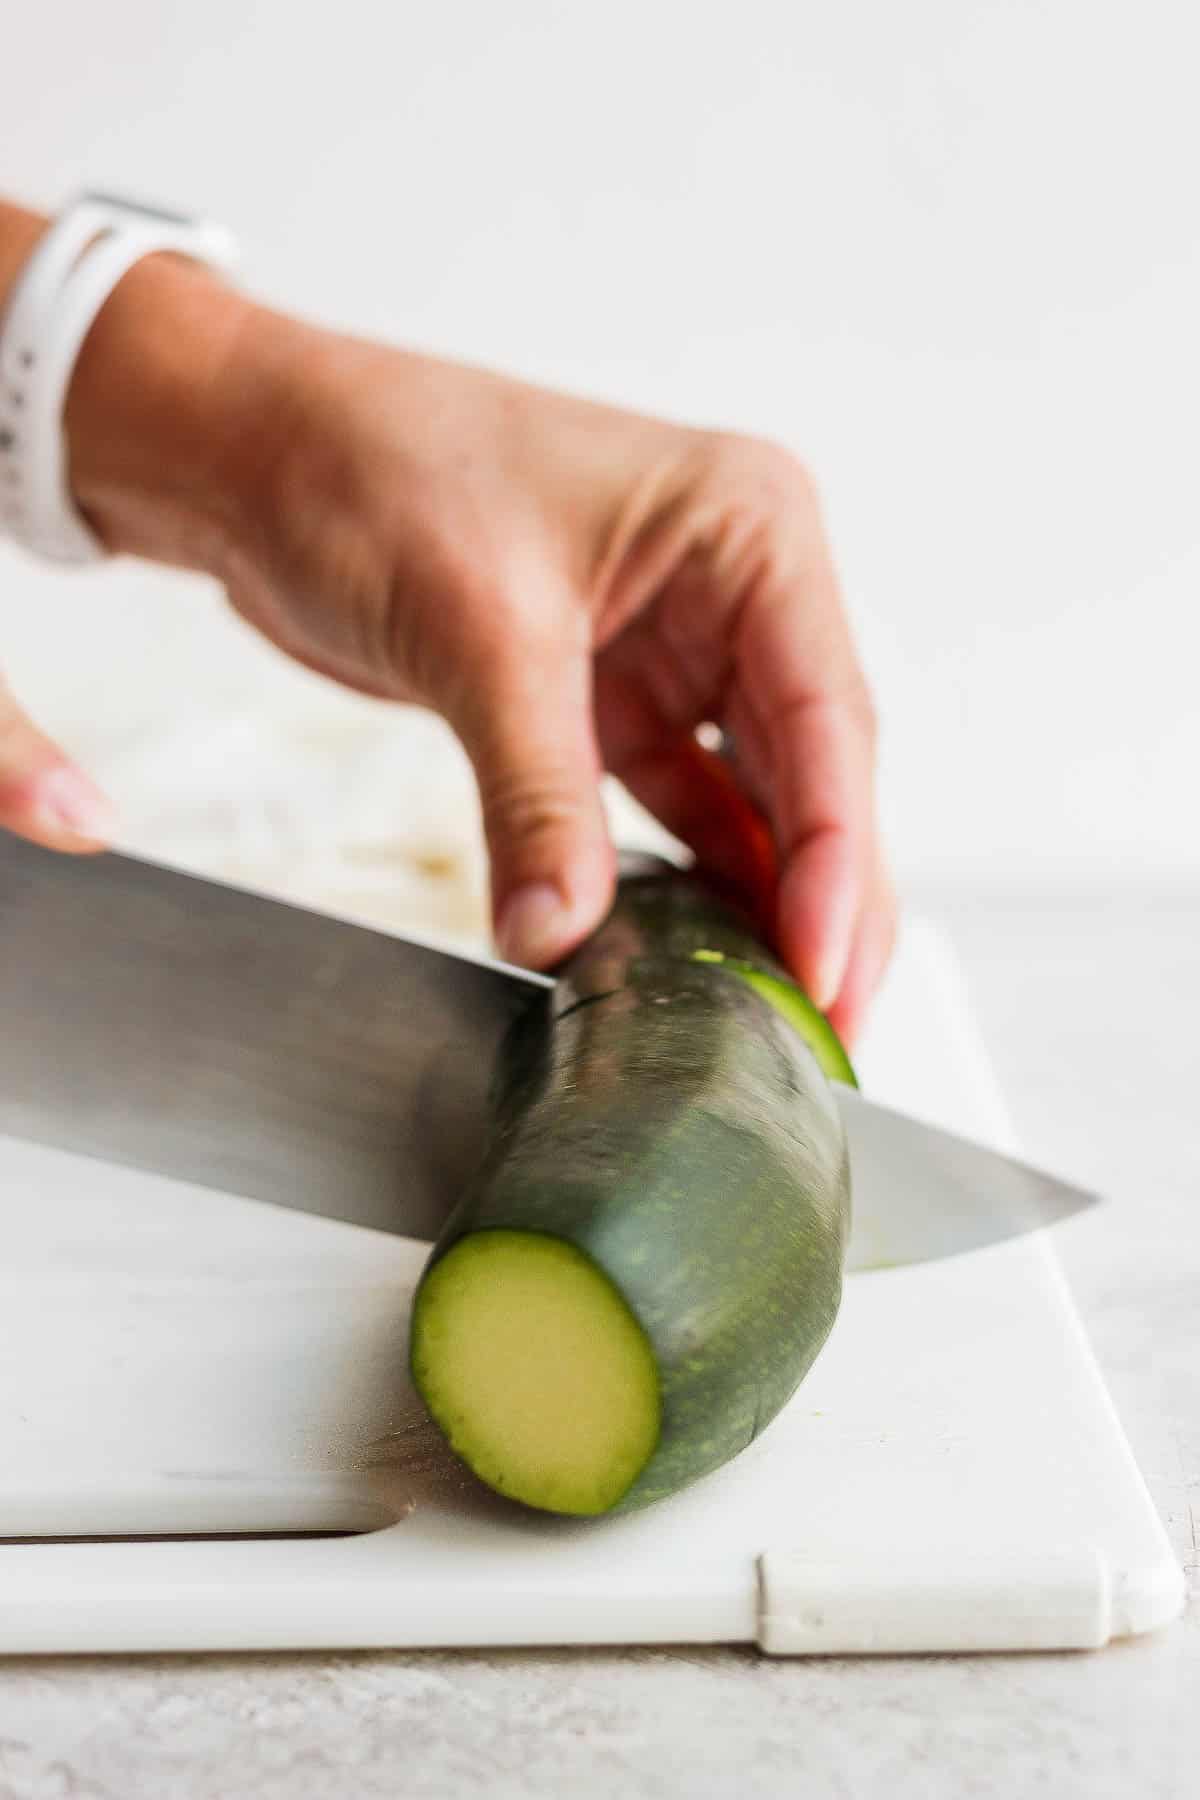 A zucchini being cut in half, widthwise.